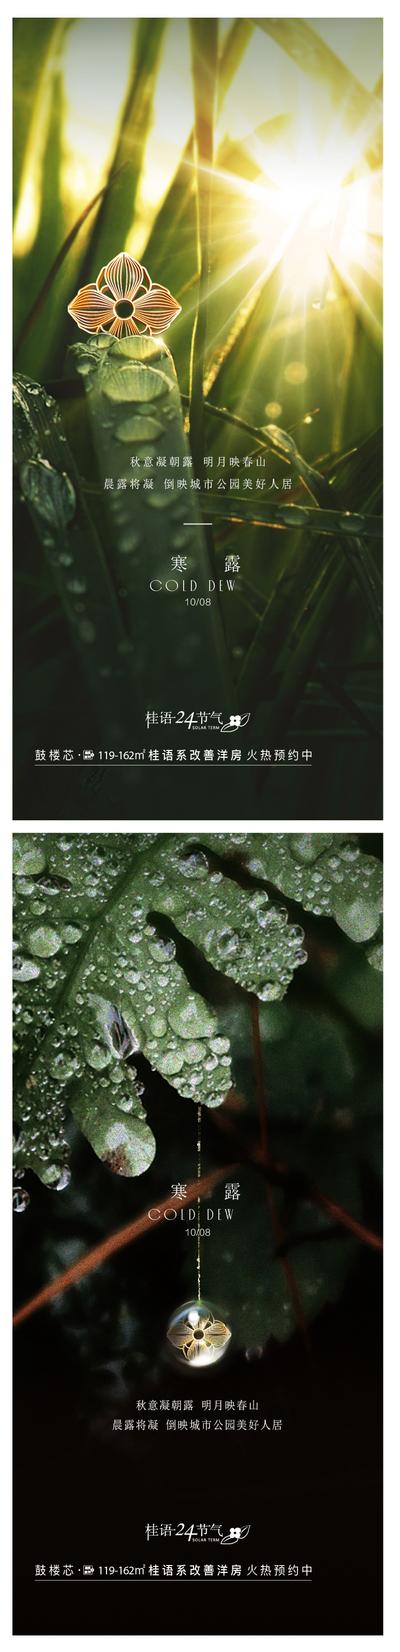 南门网 广告 海报 节气 寒露 露珠 树叶 系列 简约 自然